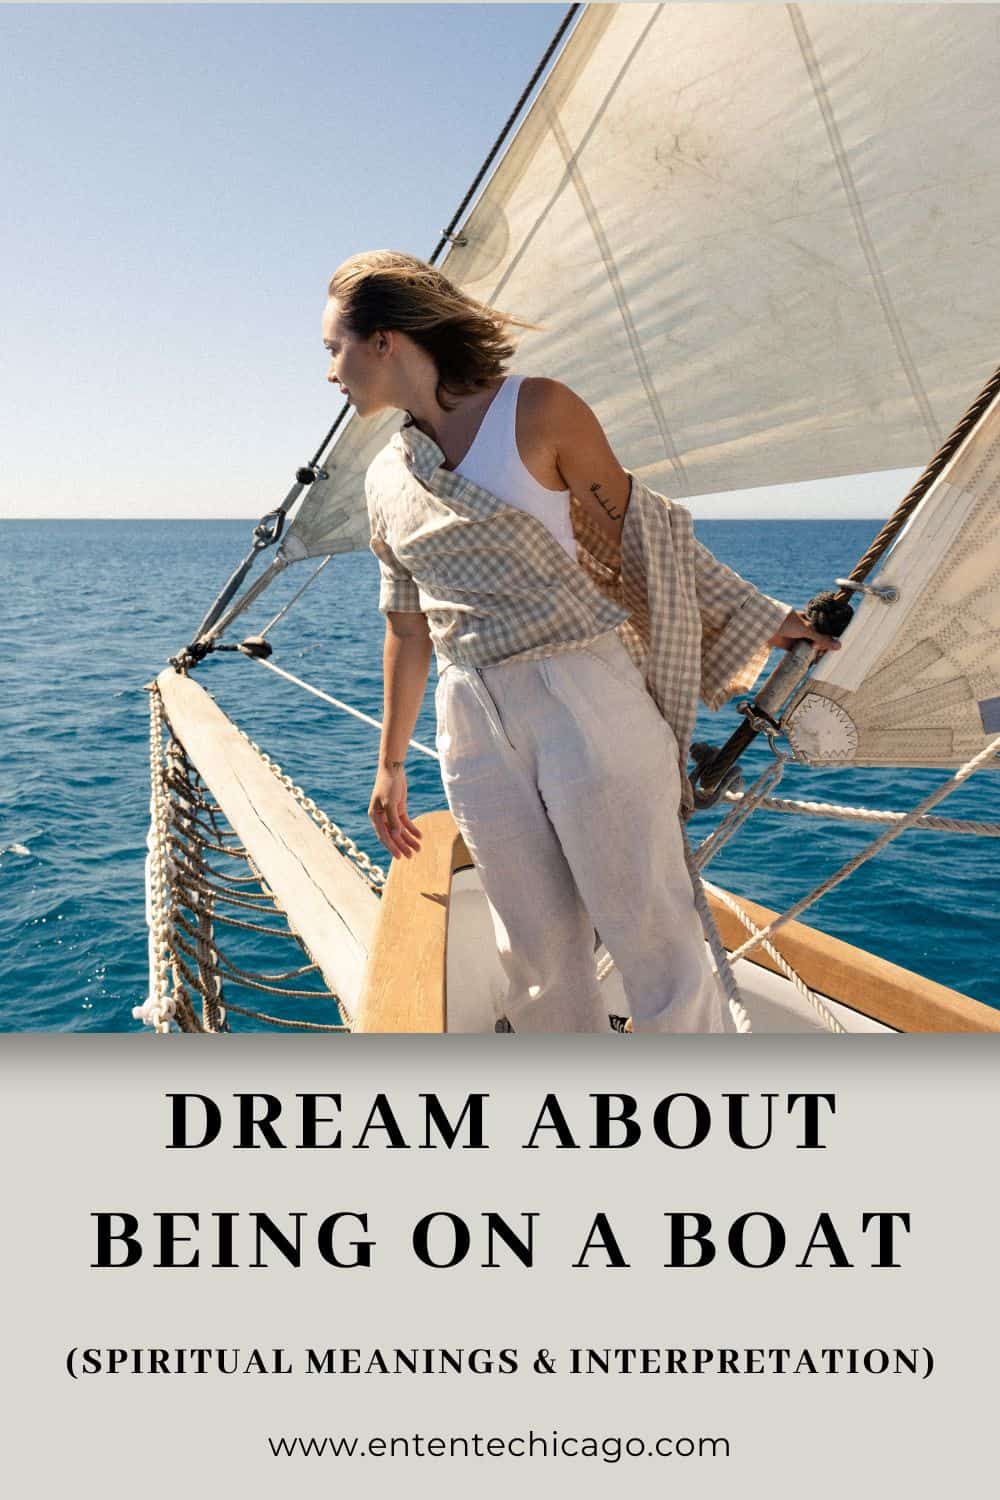  Drøm om at være på en båd med nogen (heldig fortolkning)